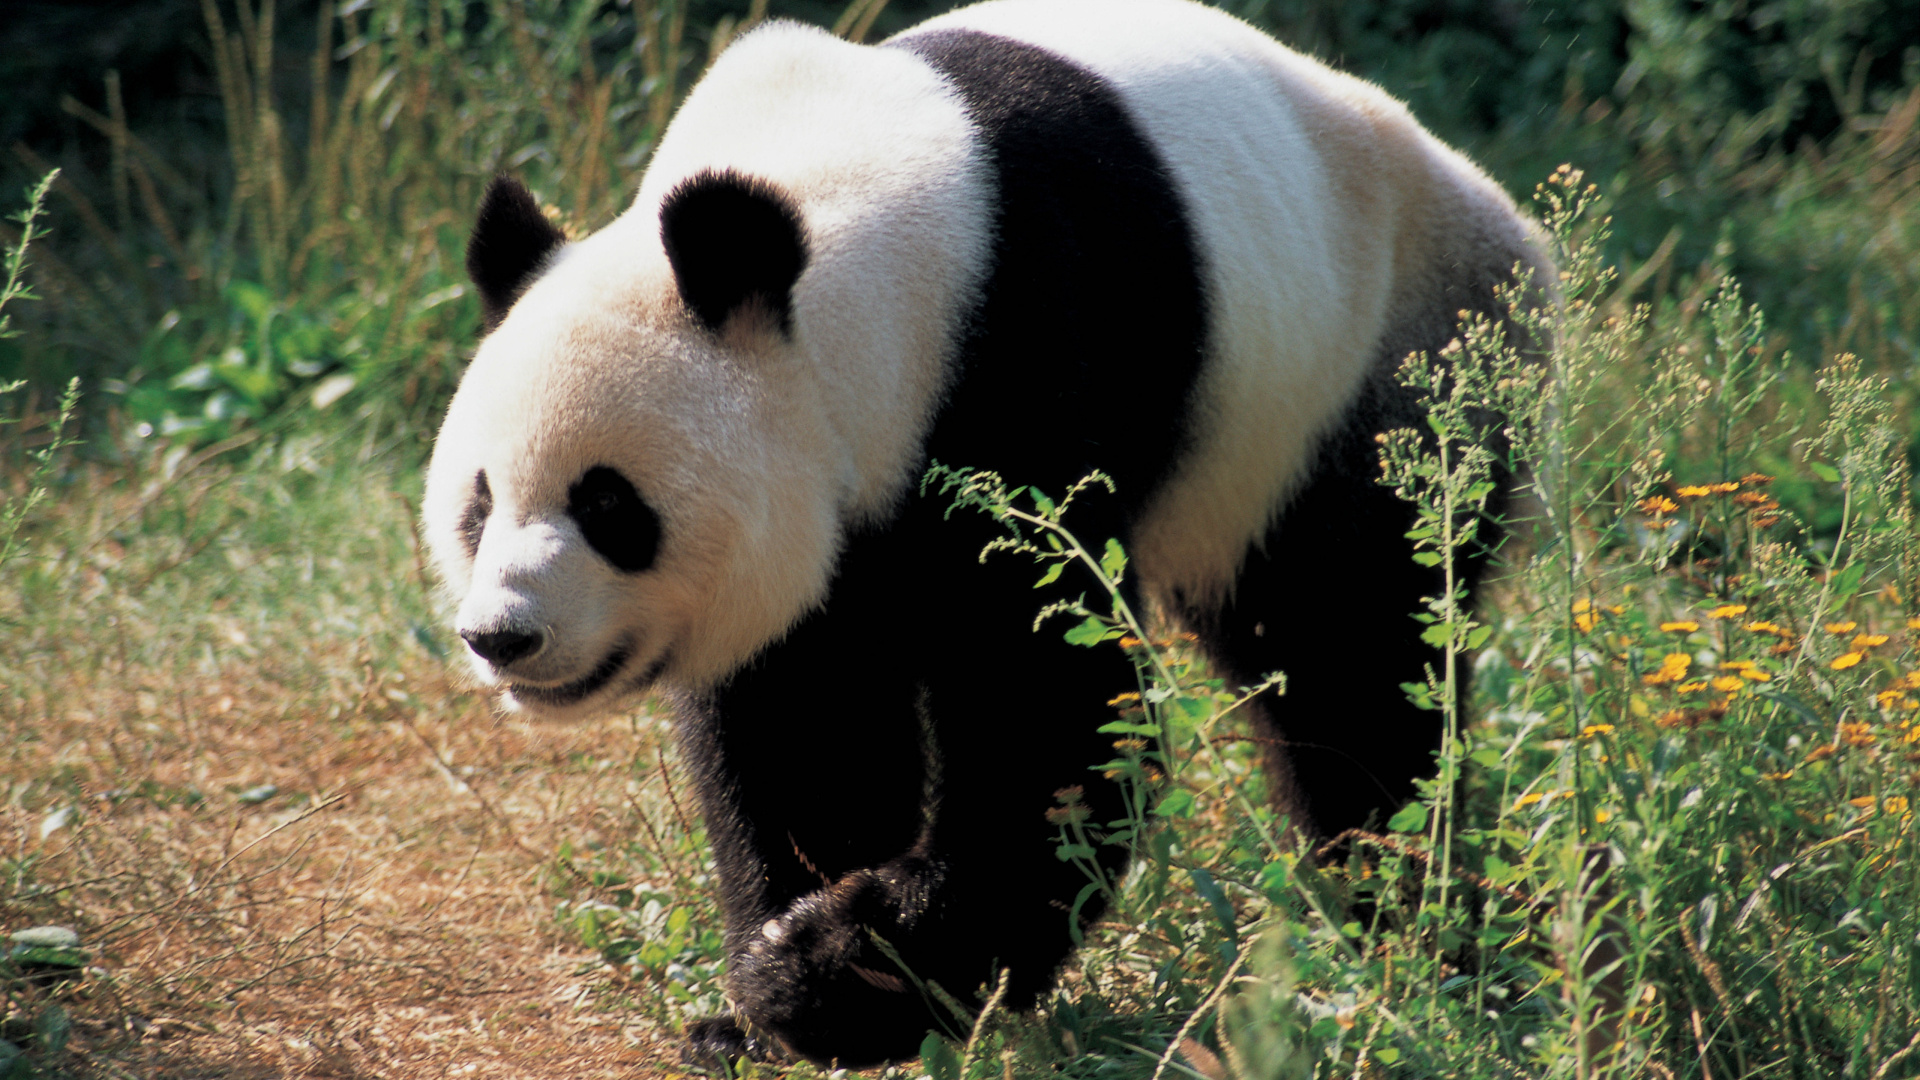 大熊猫, 陆地动物, 熊, 野生动物, 可爱 壁纸 1920x1080 允许